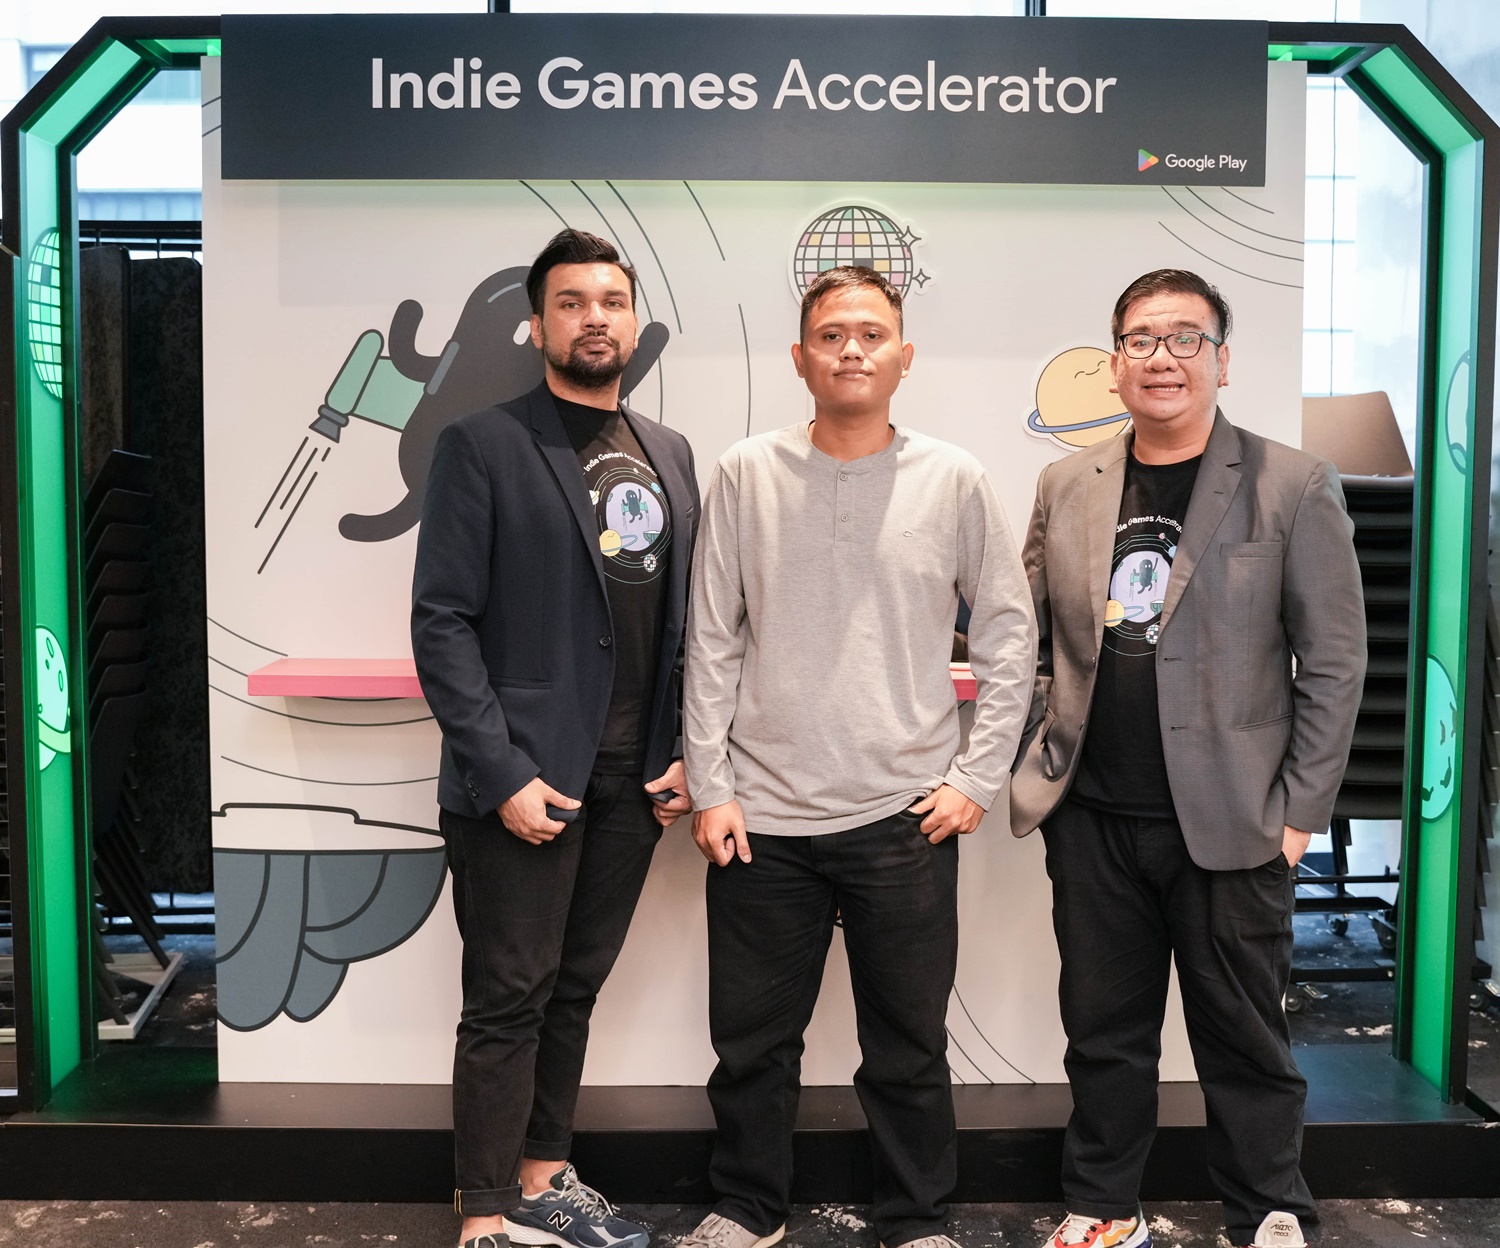 30 Studio Game Terbaik Indie Games Accelerator 2022, 3 dari Indonesia